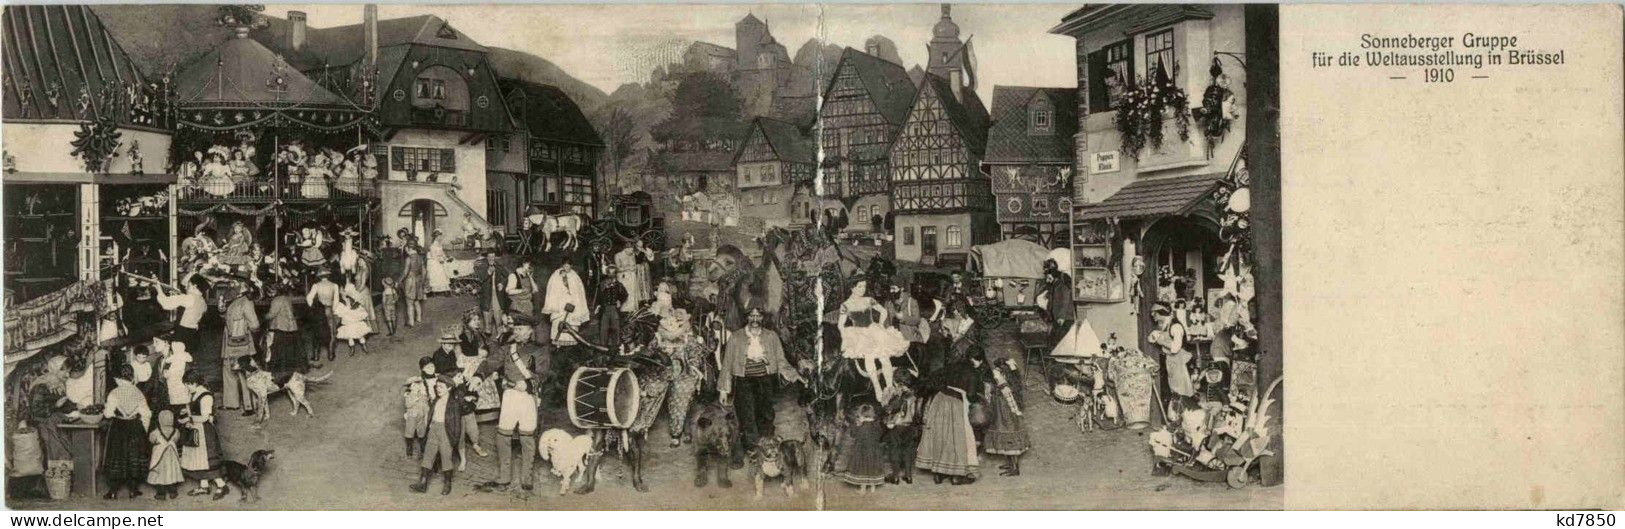 Bruxelles - Sonneberger Gruppe Für Die Weltausstellung 1910 - Klappkarte - Wereldtentoonstellingen